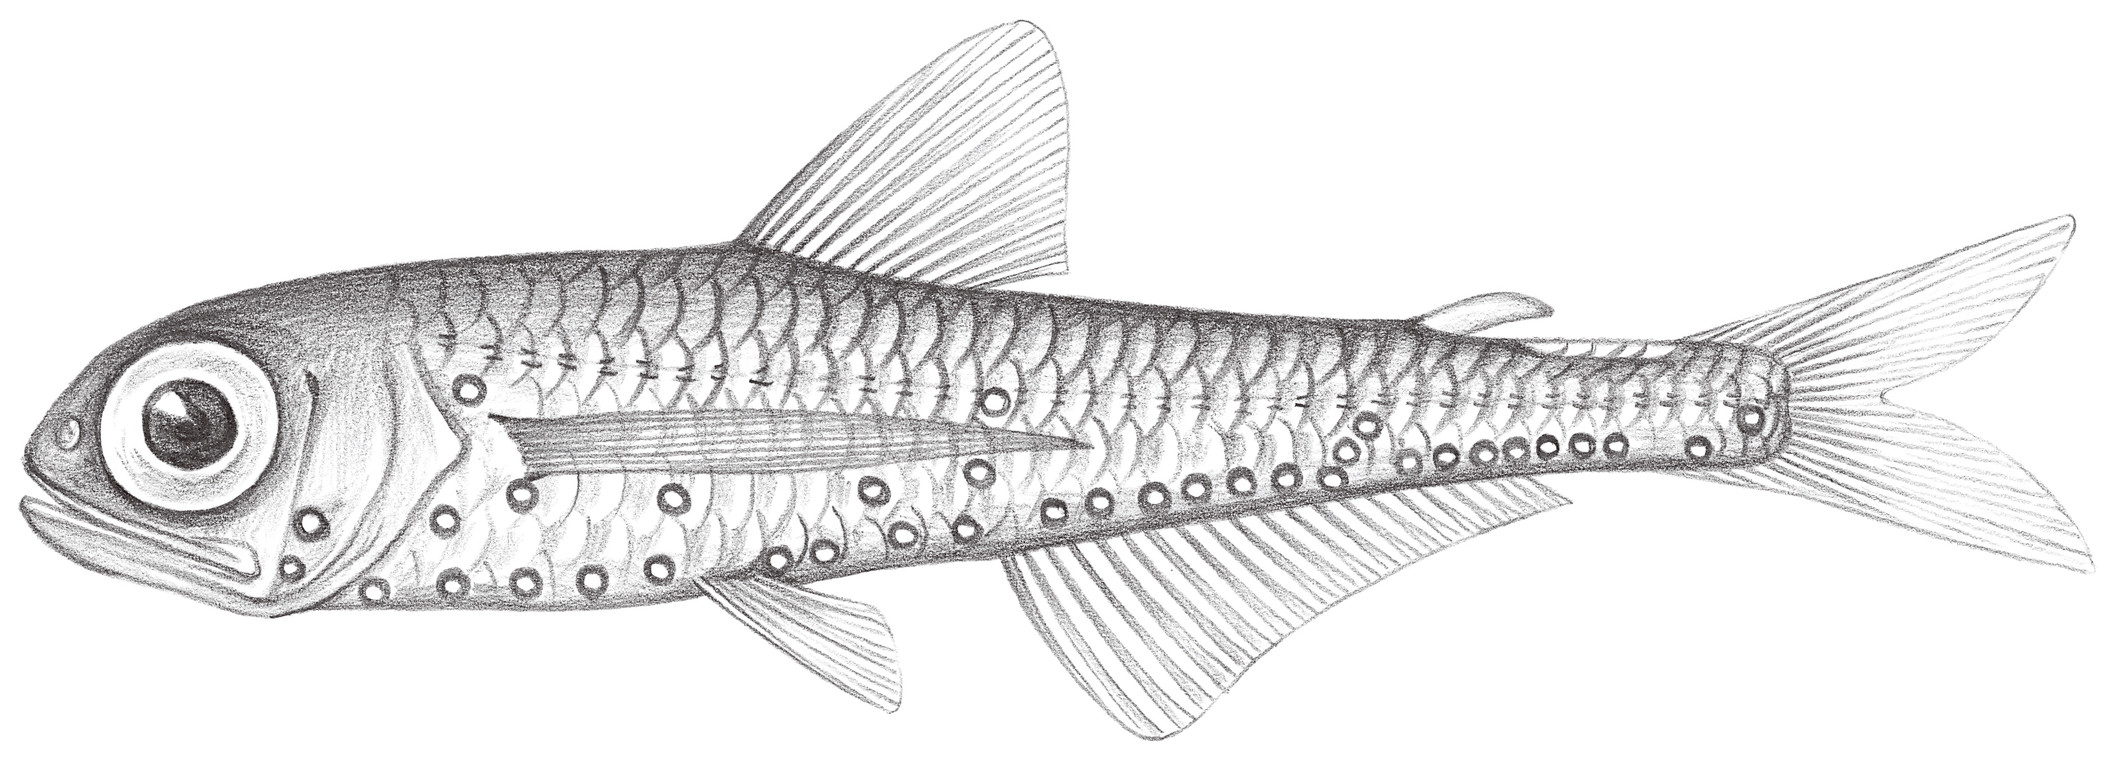 519.	萊氏壯燈魚 Hygophum reinhardtii (Lülken, 1892)